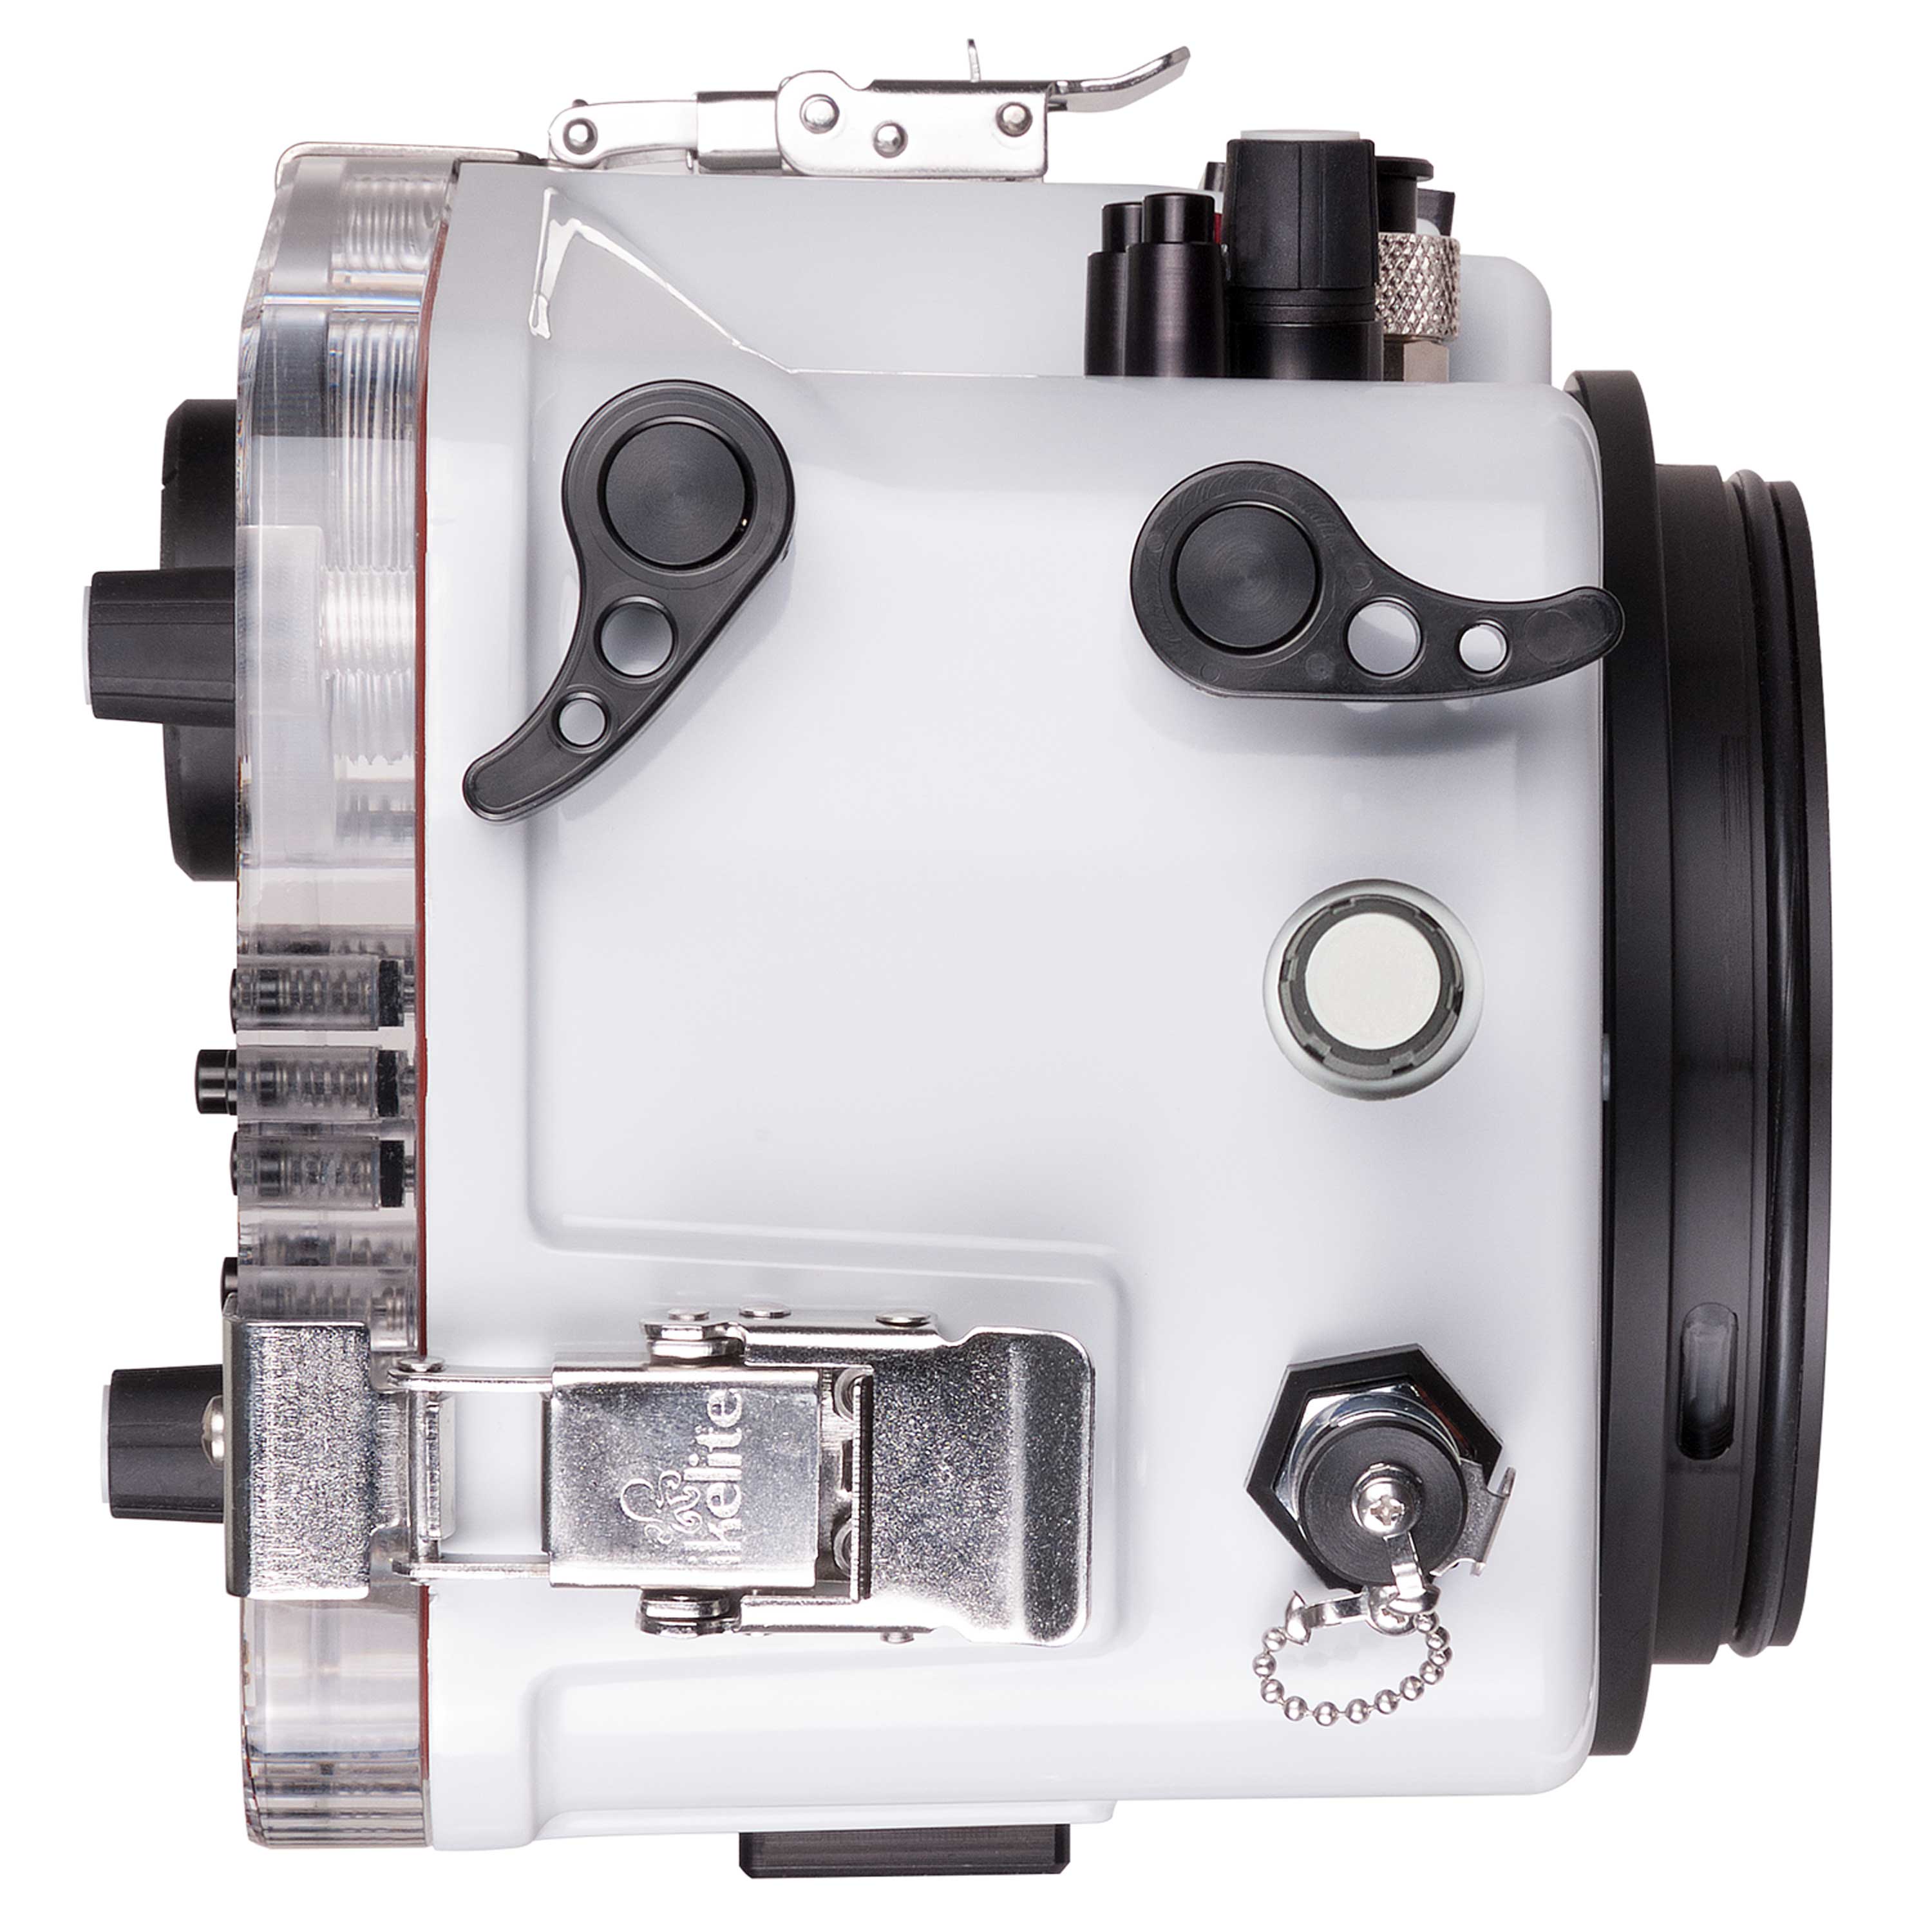 200DL Underwater Housing for Nikon D800, D800E DSLR Cameras